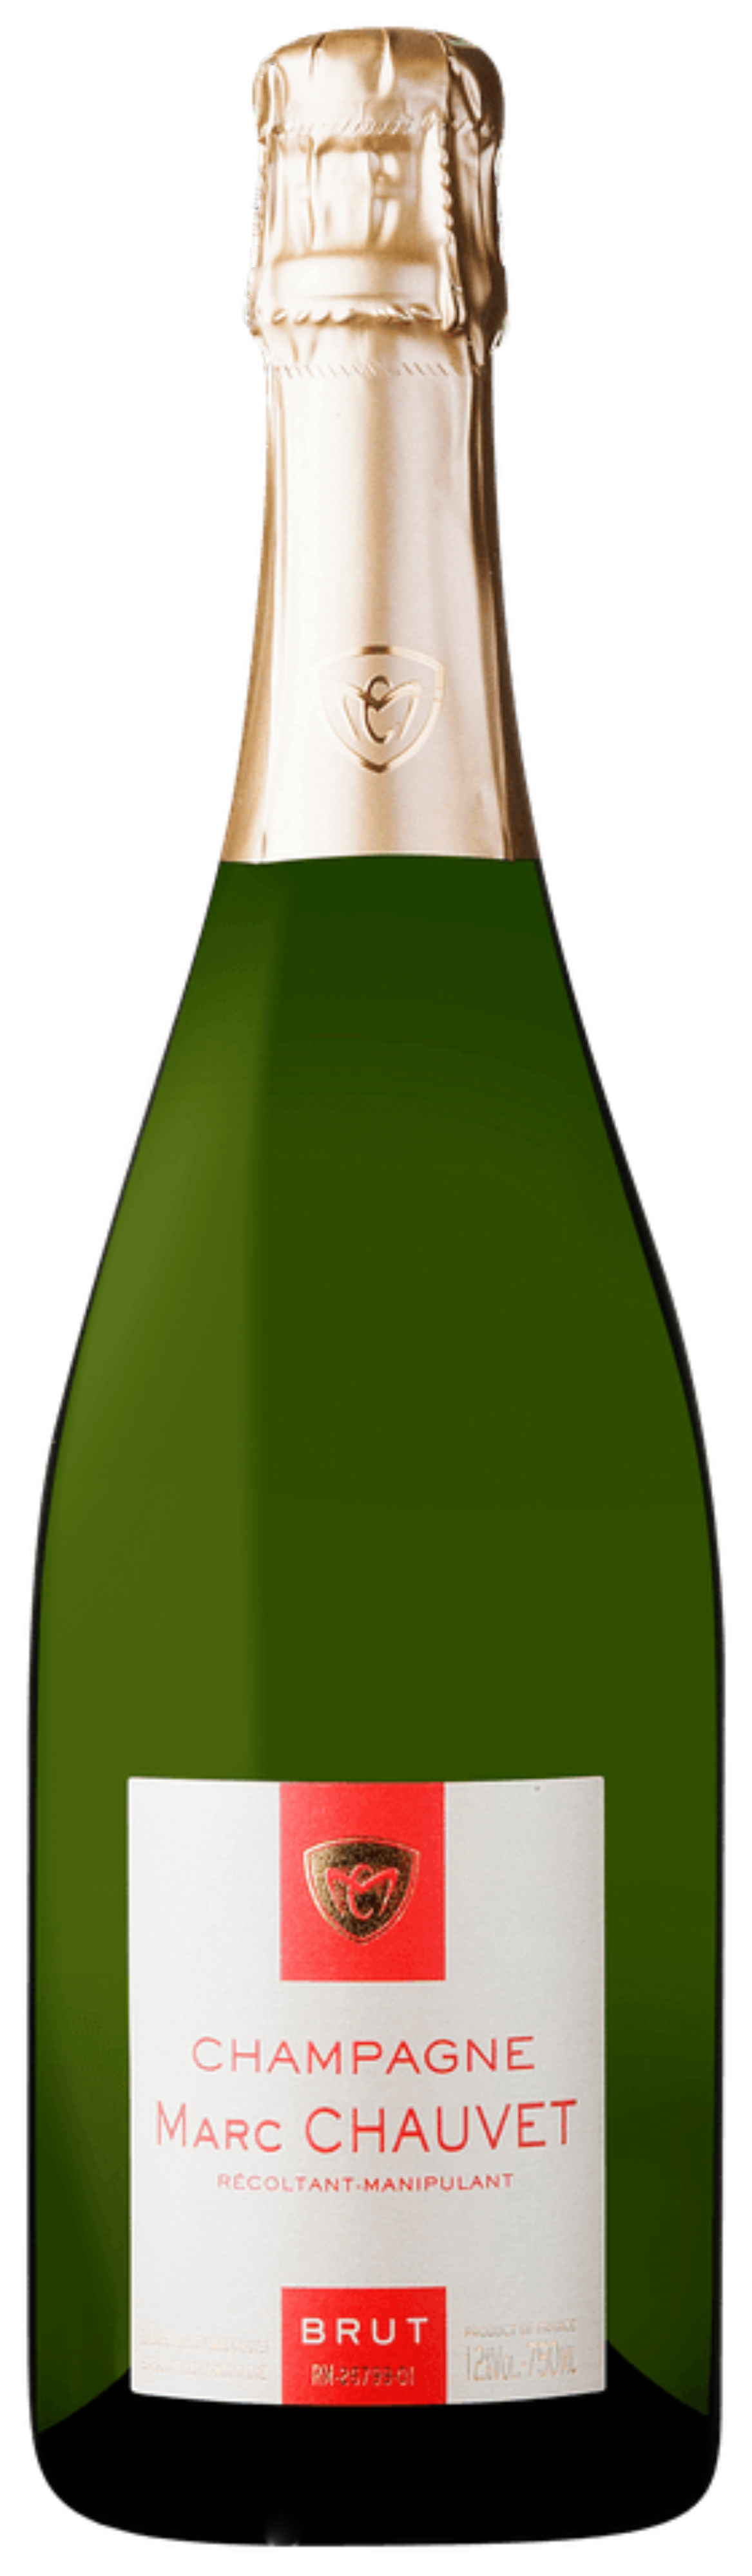 Marc Chauvet Champagne Brut